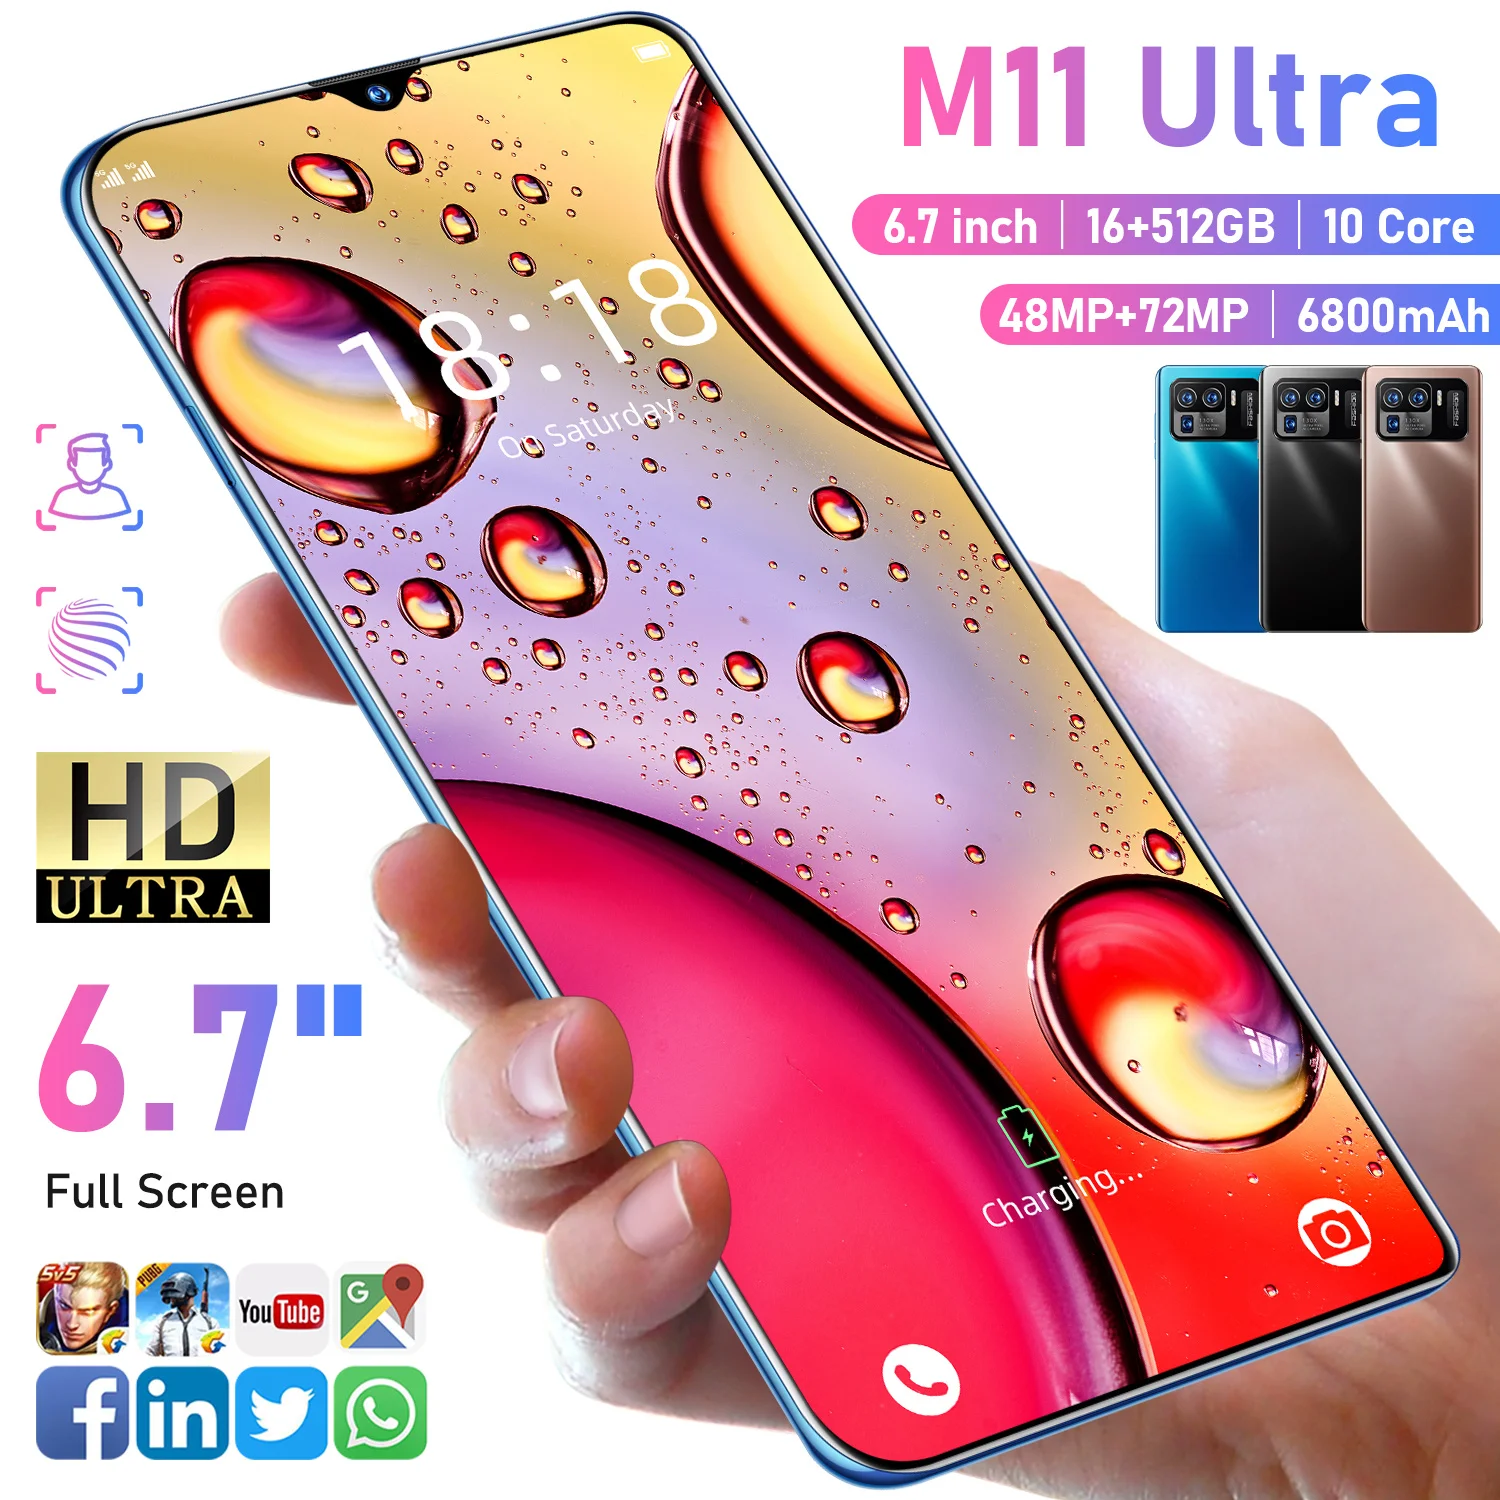 

Смартфон глобальная версия M11 Ultra, 16 гб + 512 гб, Android, 10000 сетей, GPS, 48 + 72 Мп, HD-камера, мобильные телефоны, 10 ядер, мобильные телефоны